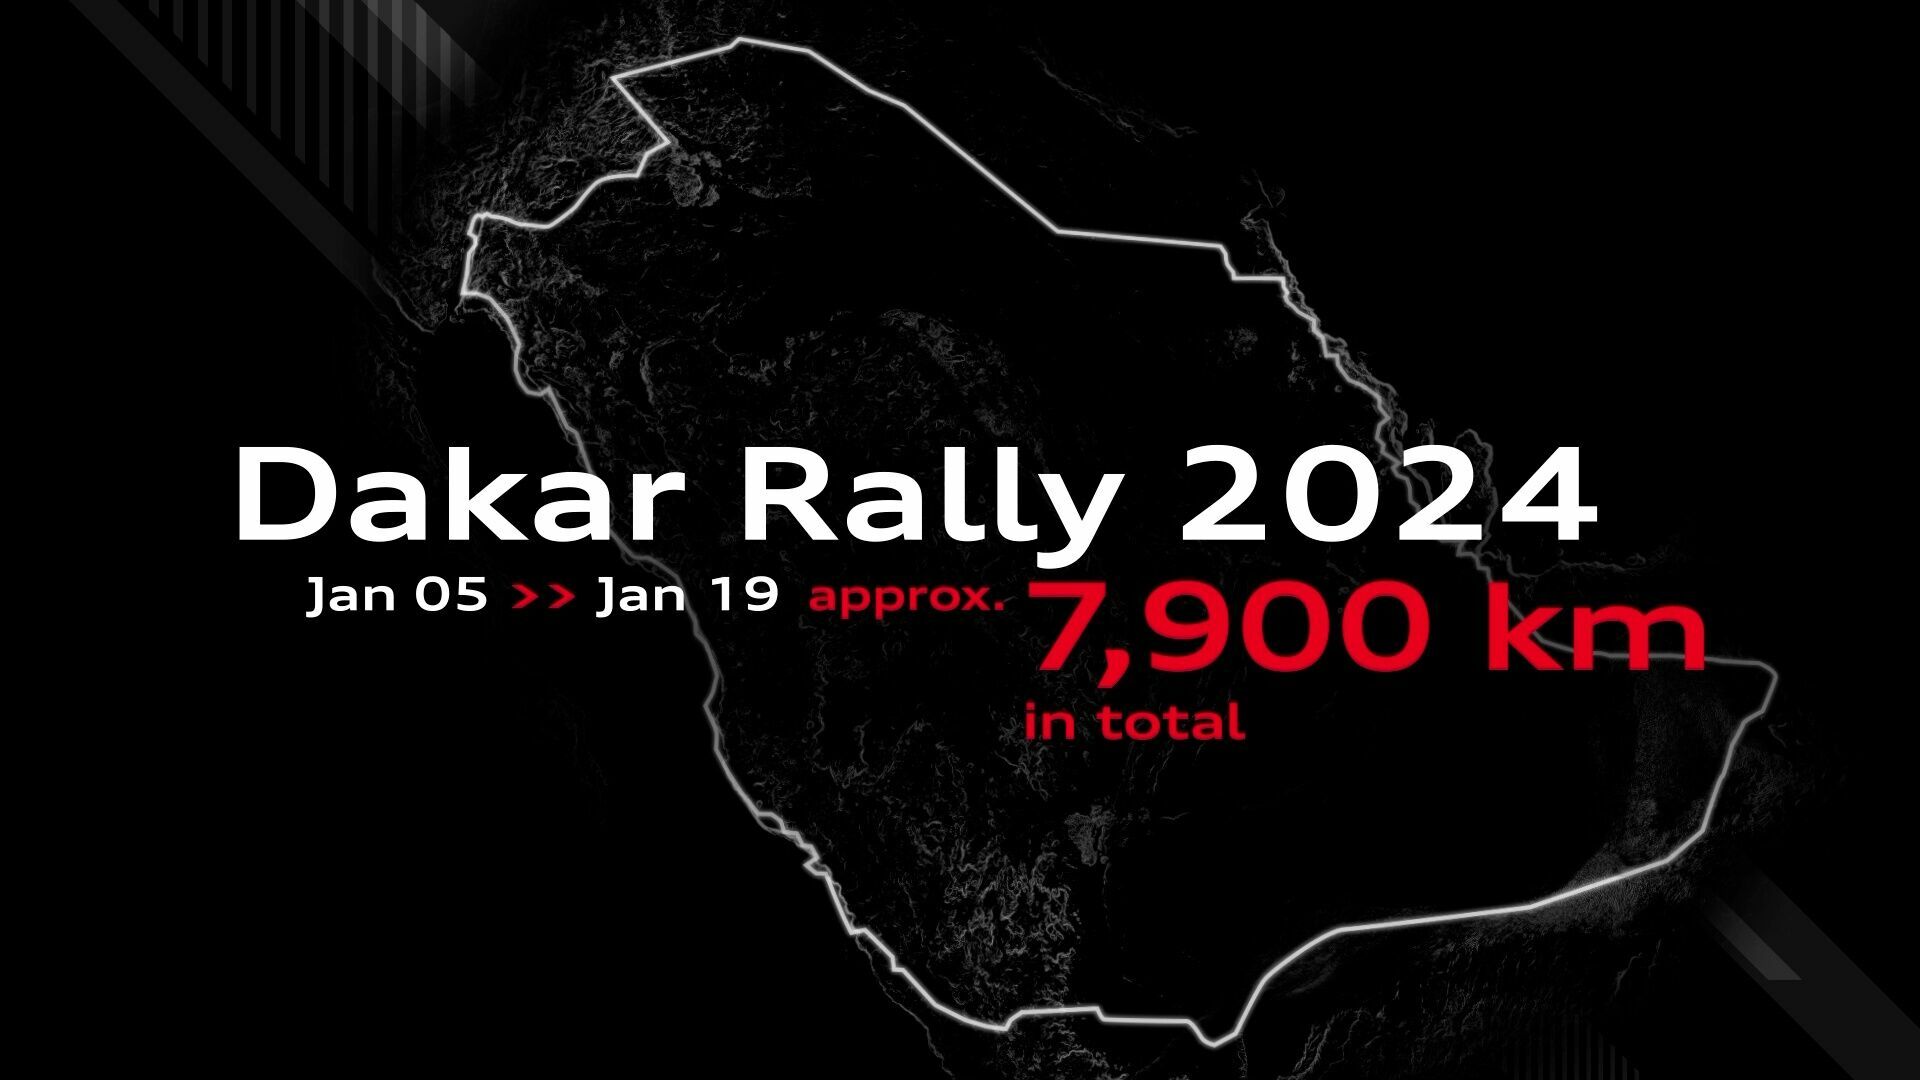 Dakar Rally 2024: Full route